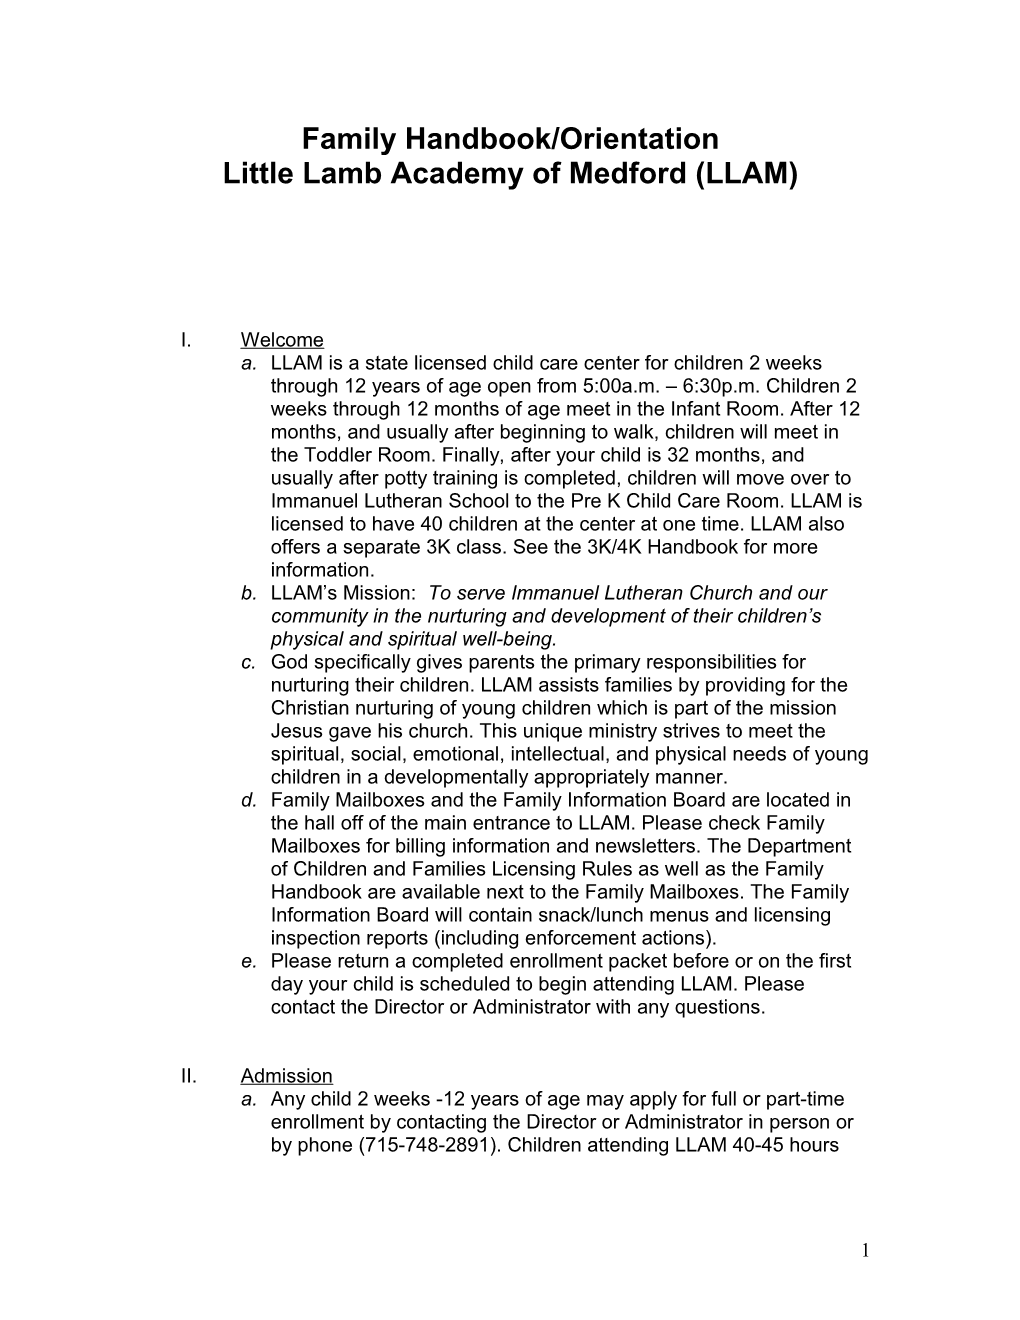 Family Handbook/Orientation Little Lamb Academy of Medford (LLAM)